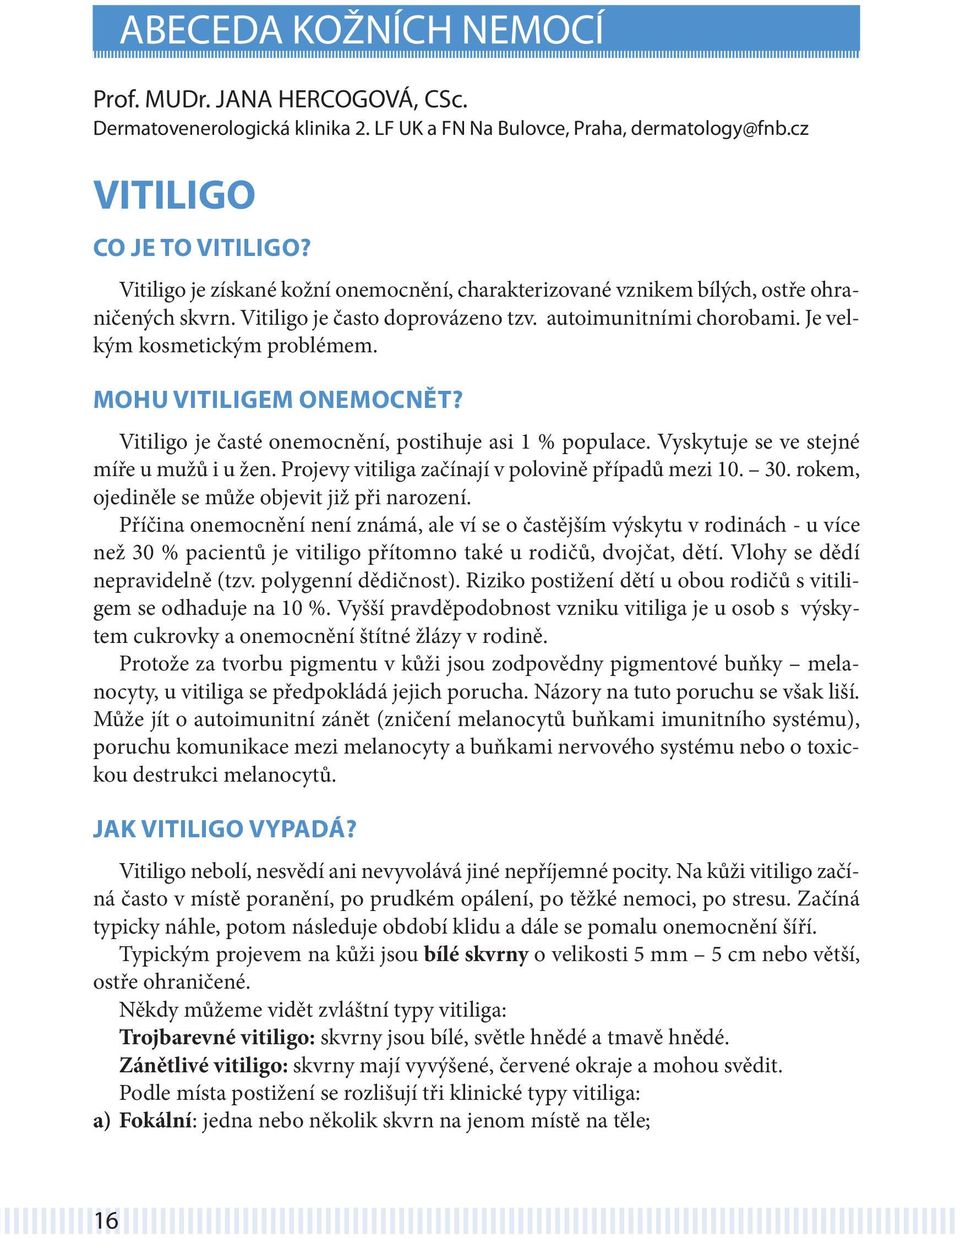 Mohu vitiligem onemocnět? Vitiligo je časté onemocnění, postihuje asi 1 % populace. Vyskytuje se ve stejné míře u mužů i u žen. Projevy vitiliga začínají v polovině případů mezi 10. 30.